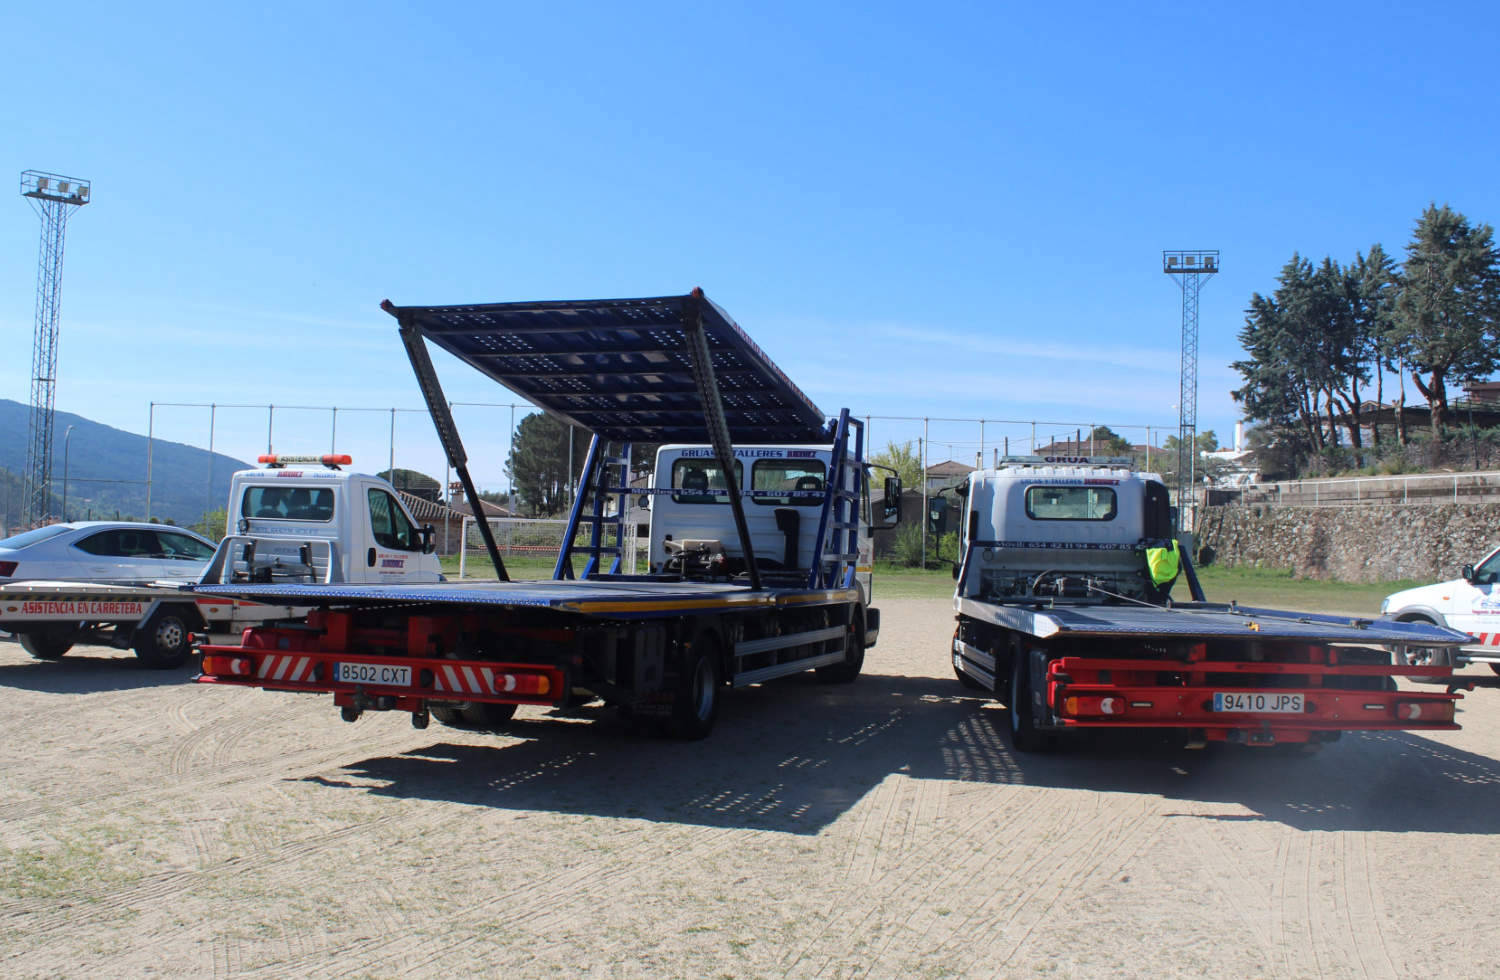 Grúas y talleres Jiménez servicio de rescate y asistencia en carretera taller mecánico móvil transporte vehículos taller reparación asistencia en viaje 24/365